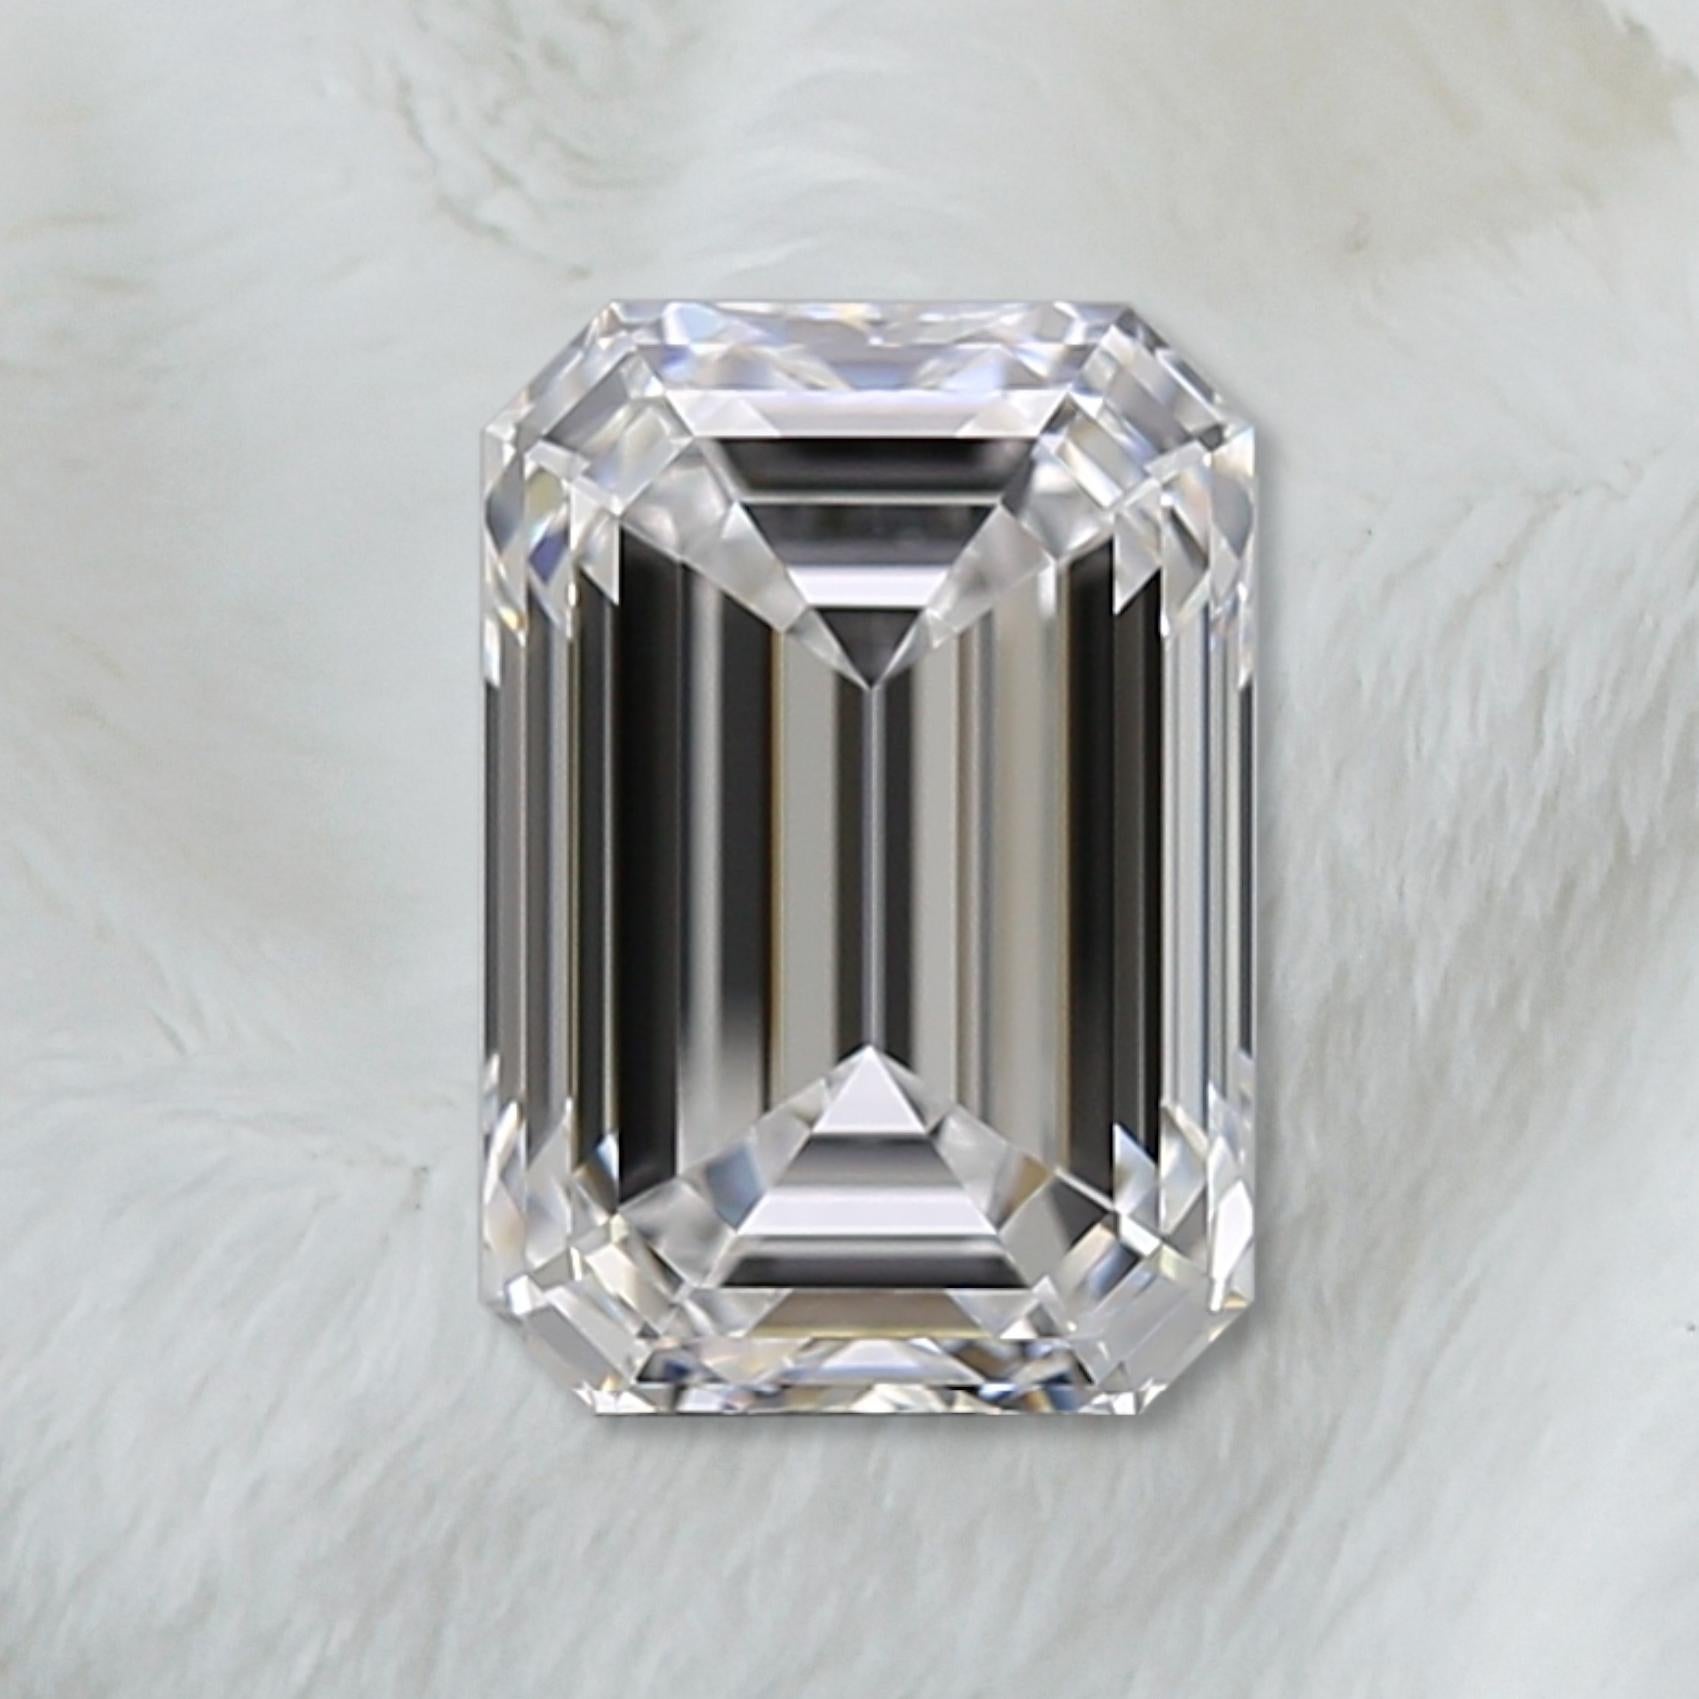 3 carat diamond on finger